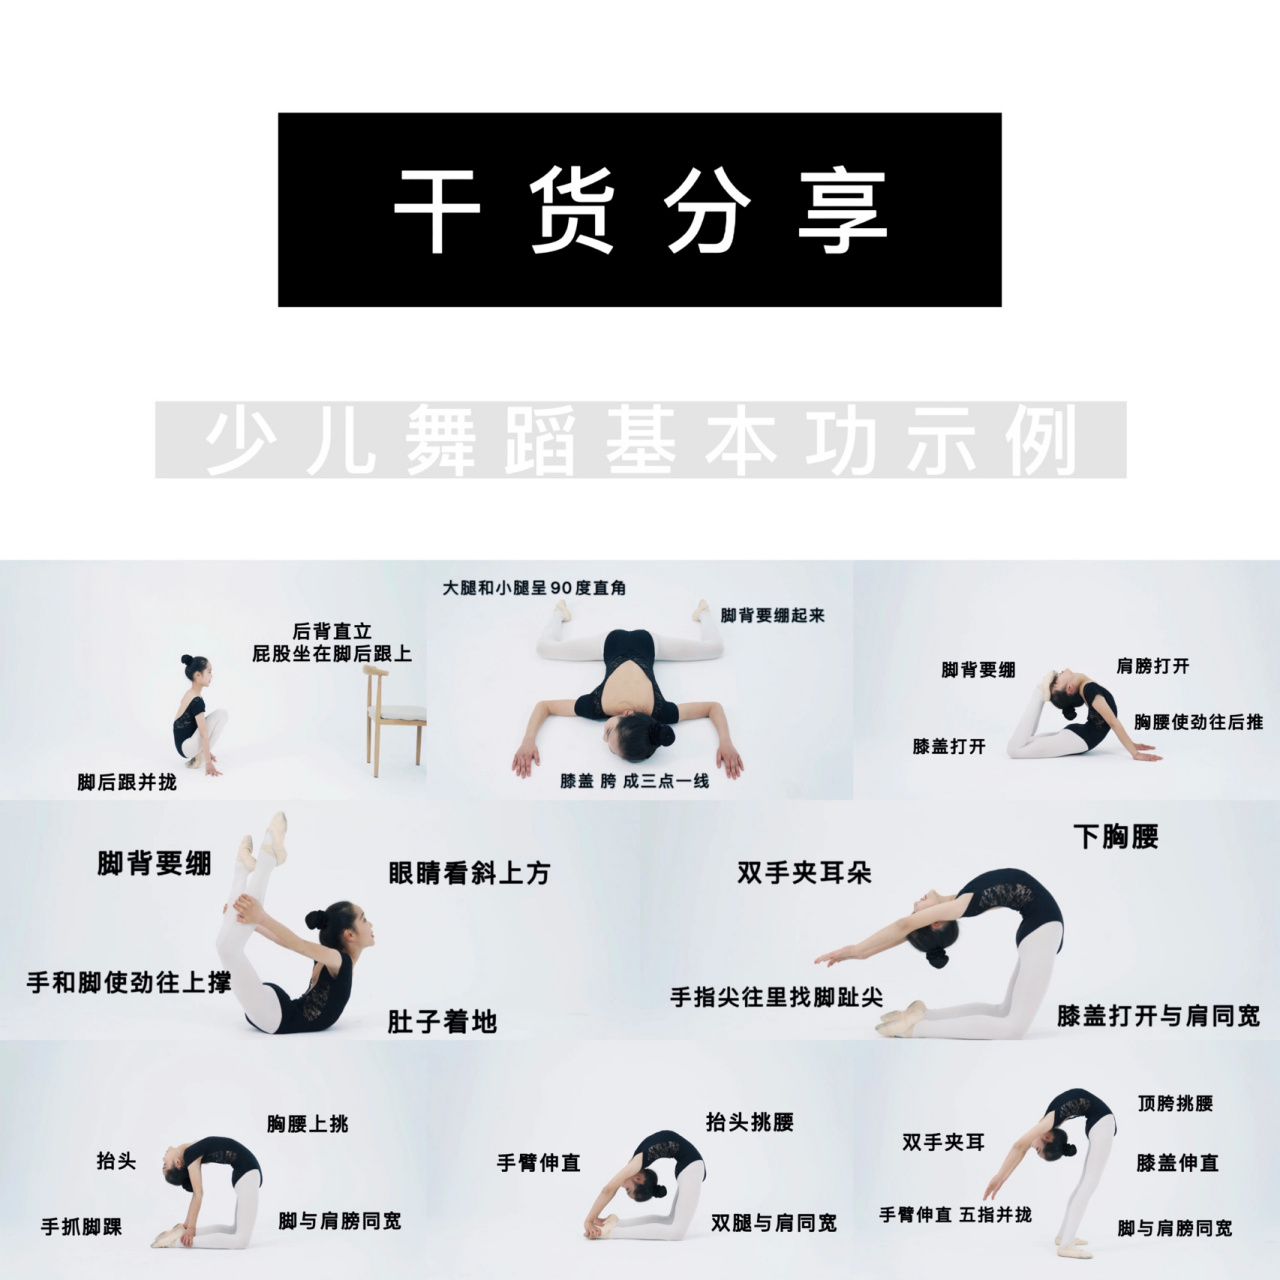 中国舞基本功训练图解图片